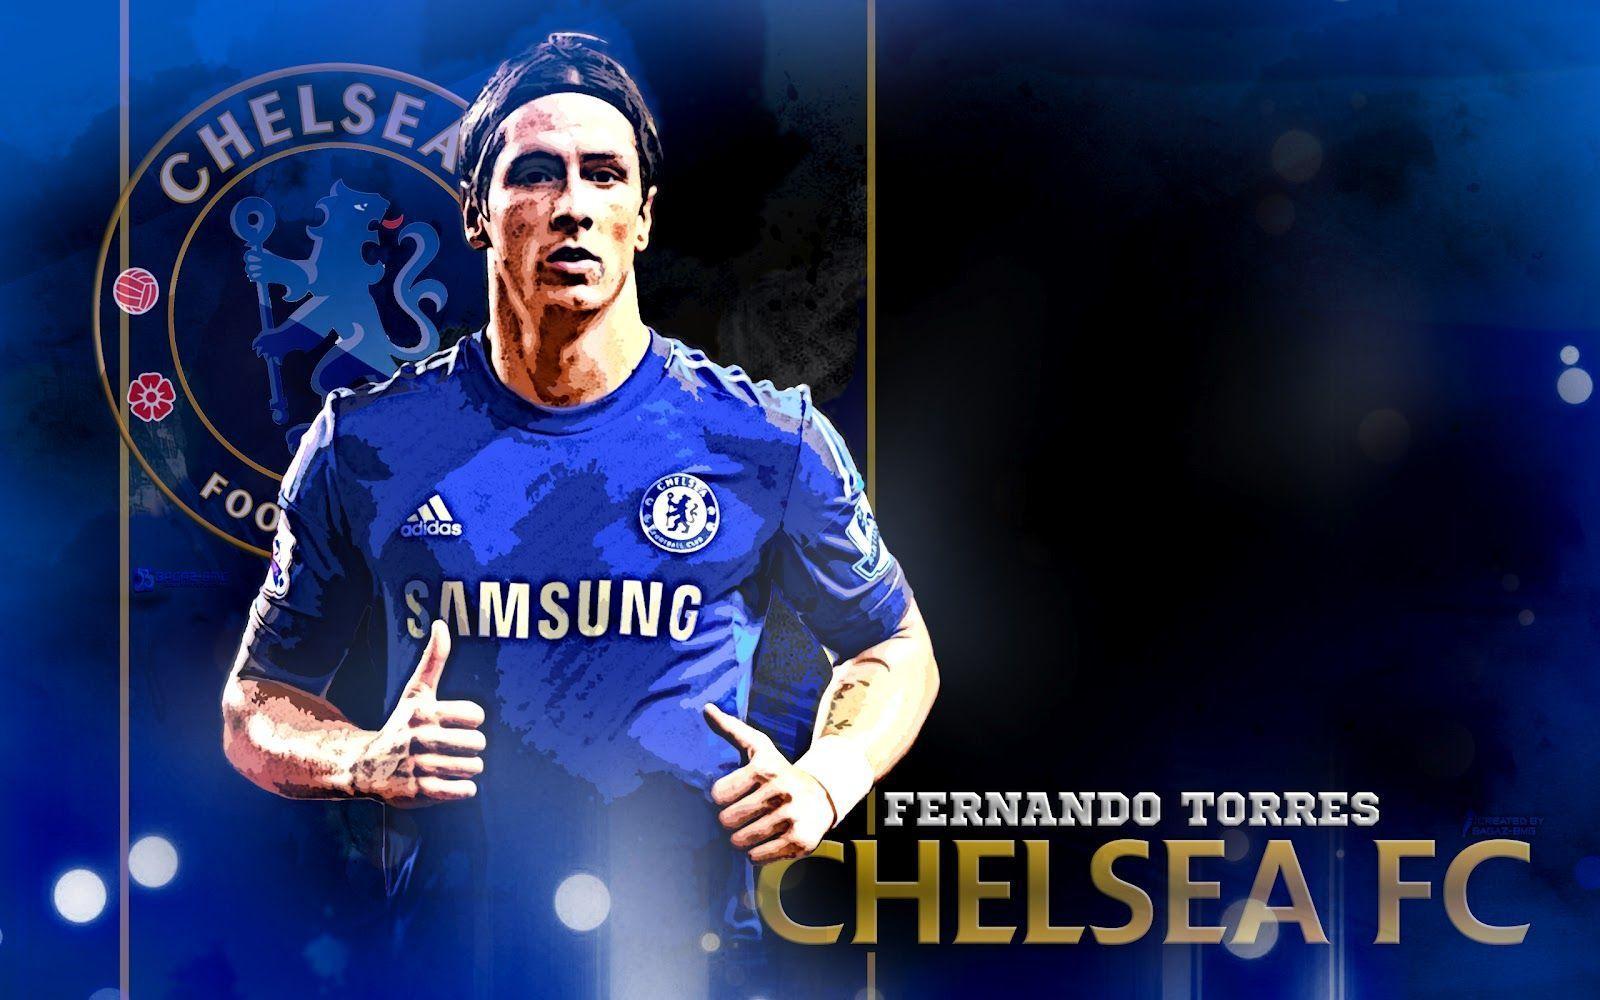 Fernando Torres Chelsea wallpapers